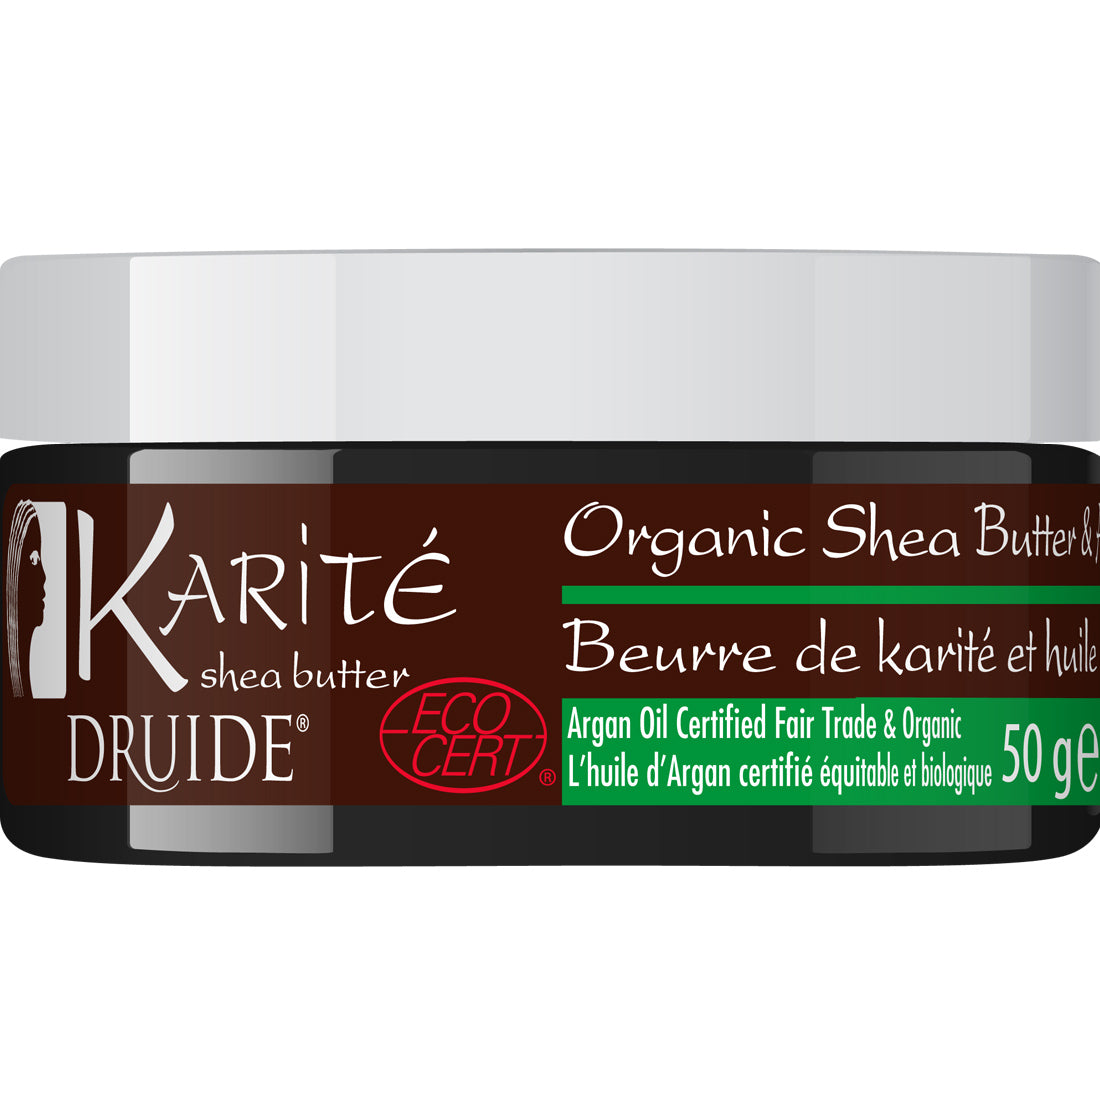 Druide Organic Shea Butter and Argan Oil, 50g